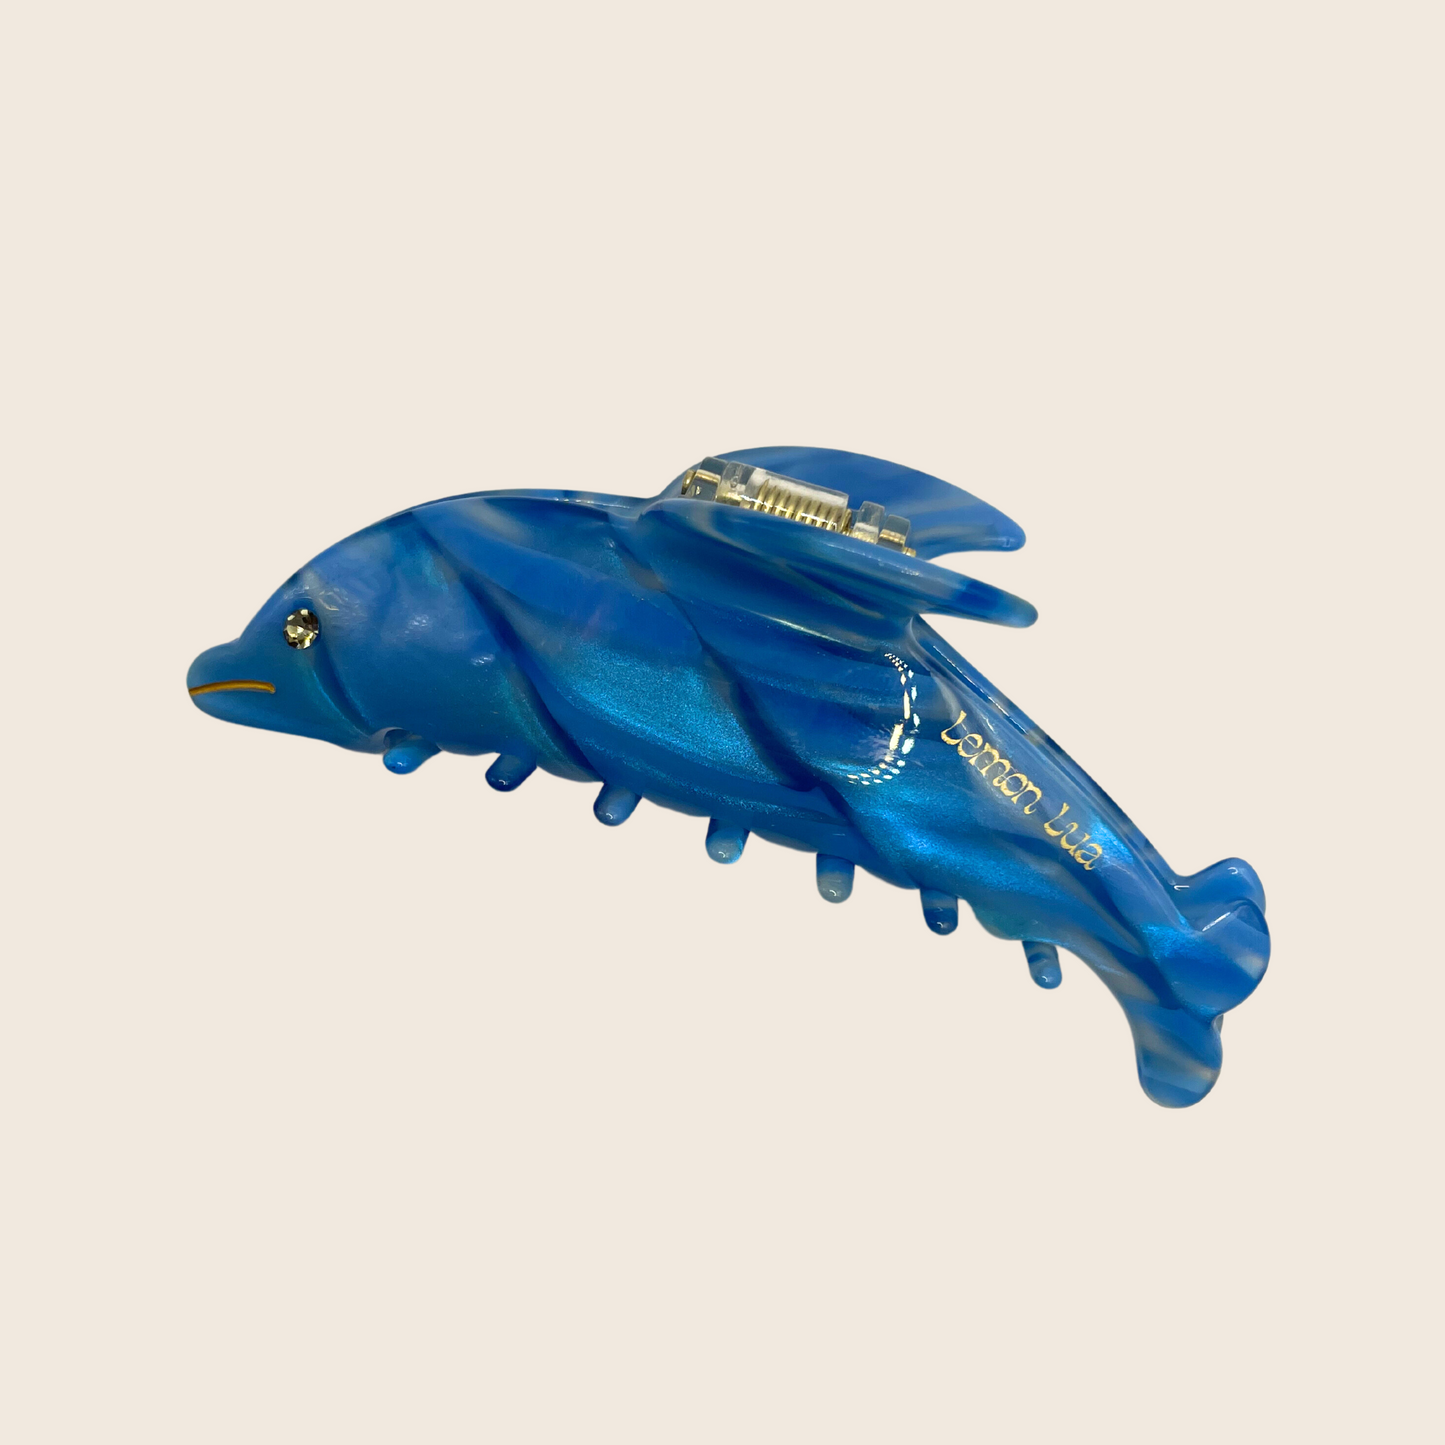 Dolphin Hairclip - Lemon Lua Dolphin Hairclip Lemon Lua Blue Lemon Lua Dolphin Hairclip Dolphin Hairclip